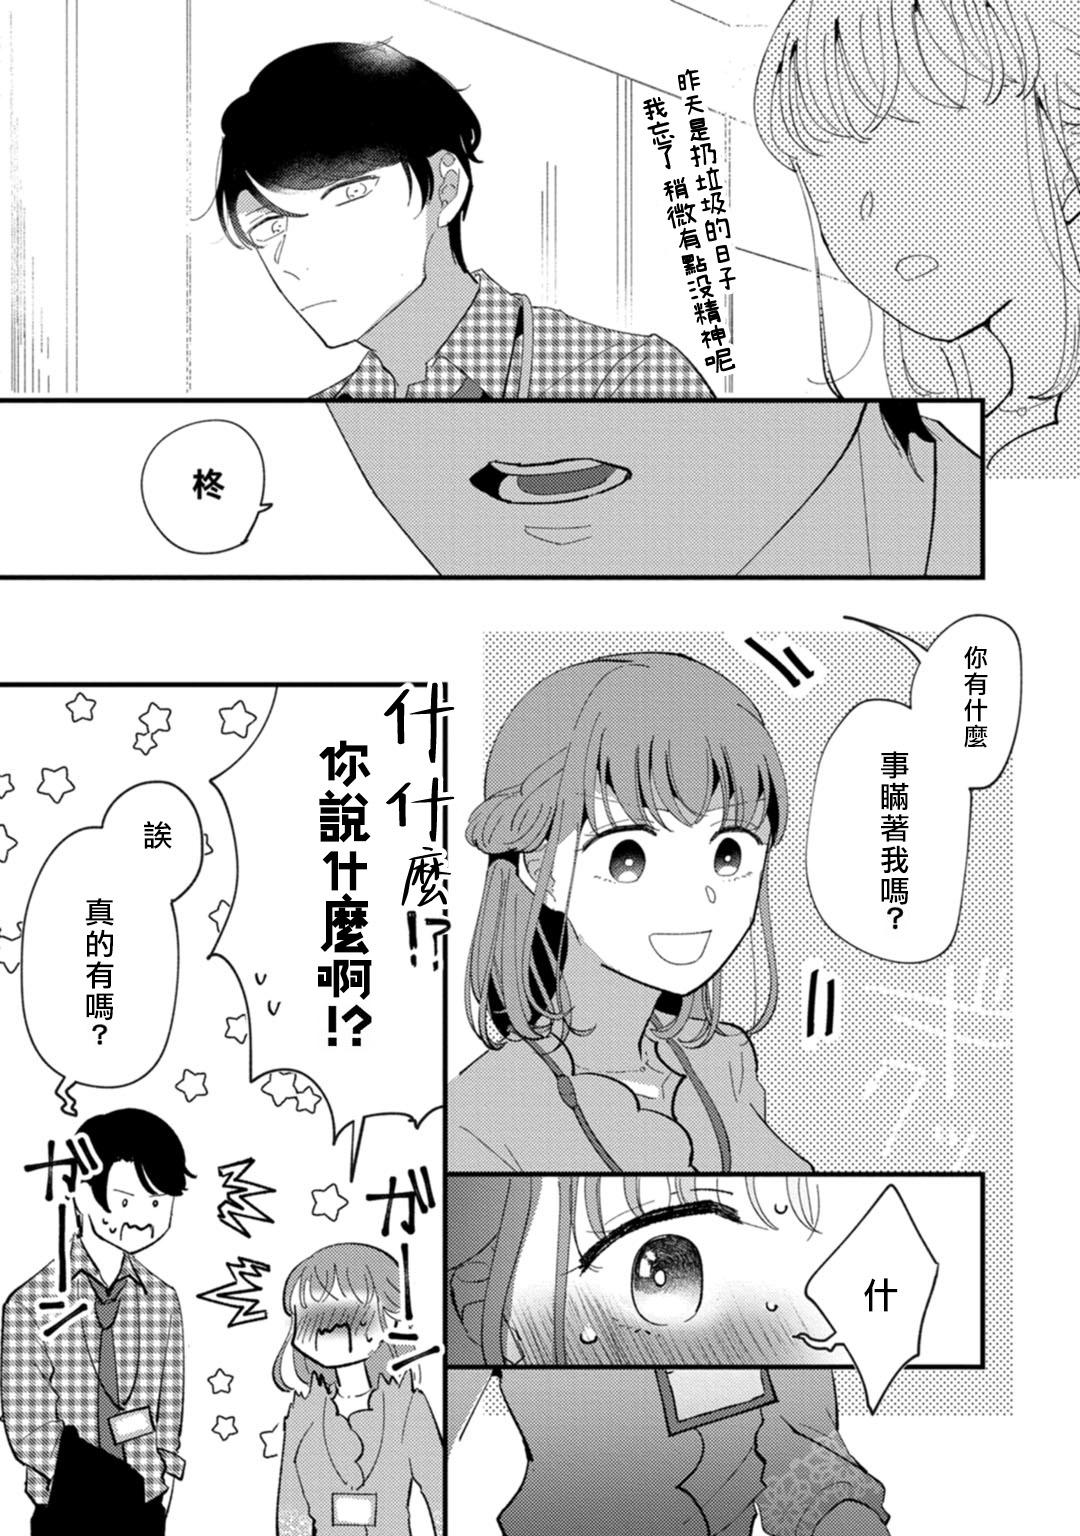 Teensnow Watashiha Okazusenpai ni Taberaretai Trans - Page 6